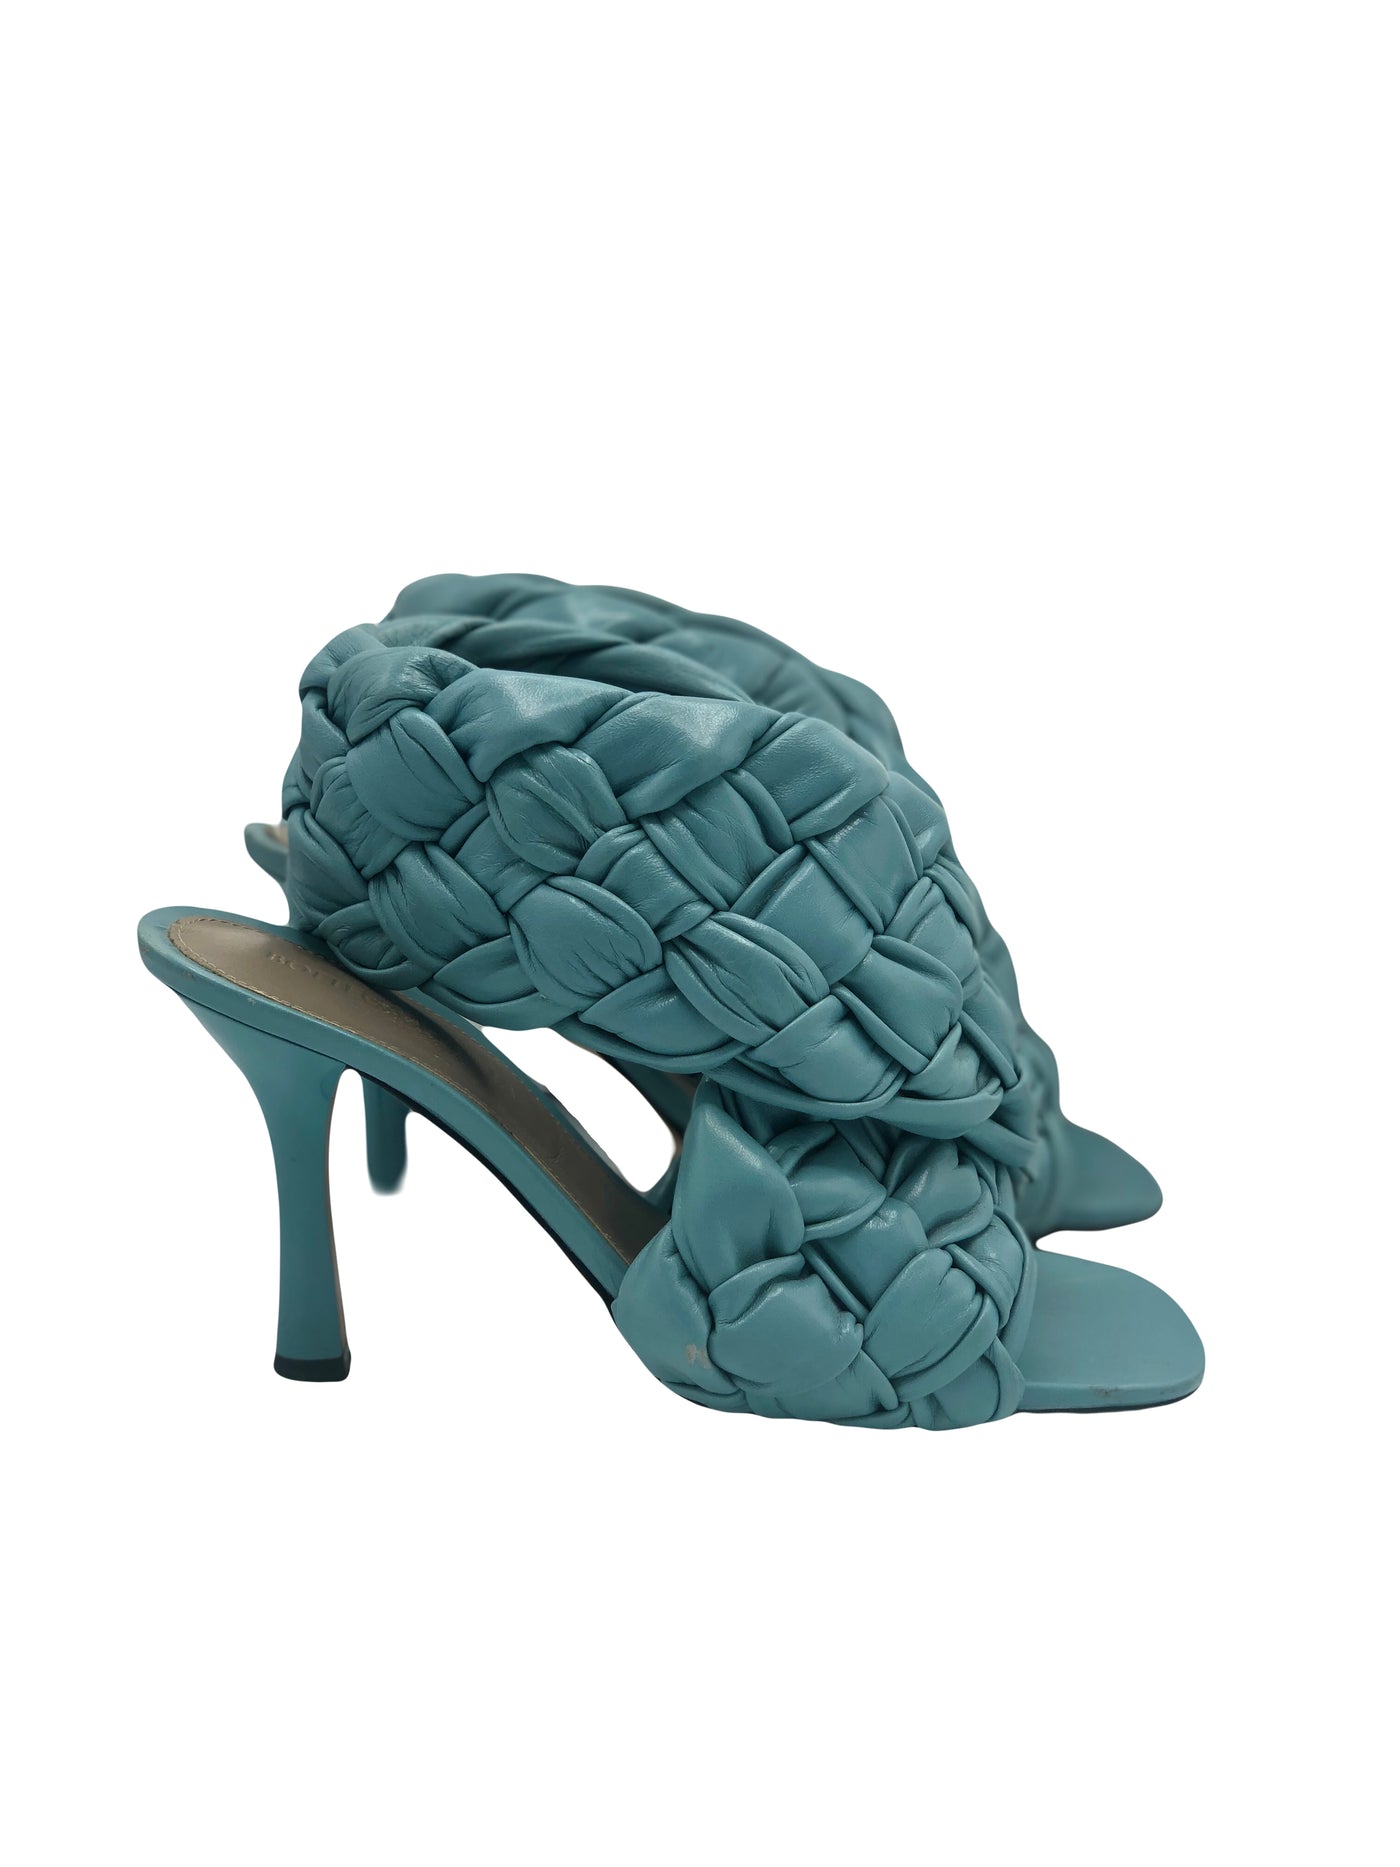 BOTTEGA VENETA Raffia blue heels size 37.5 RRP: £1202